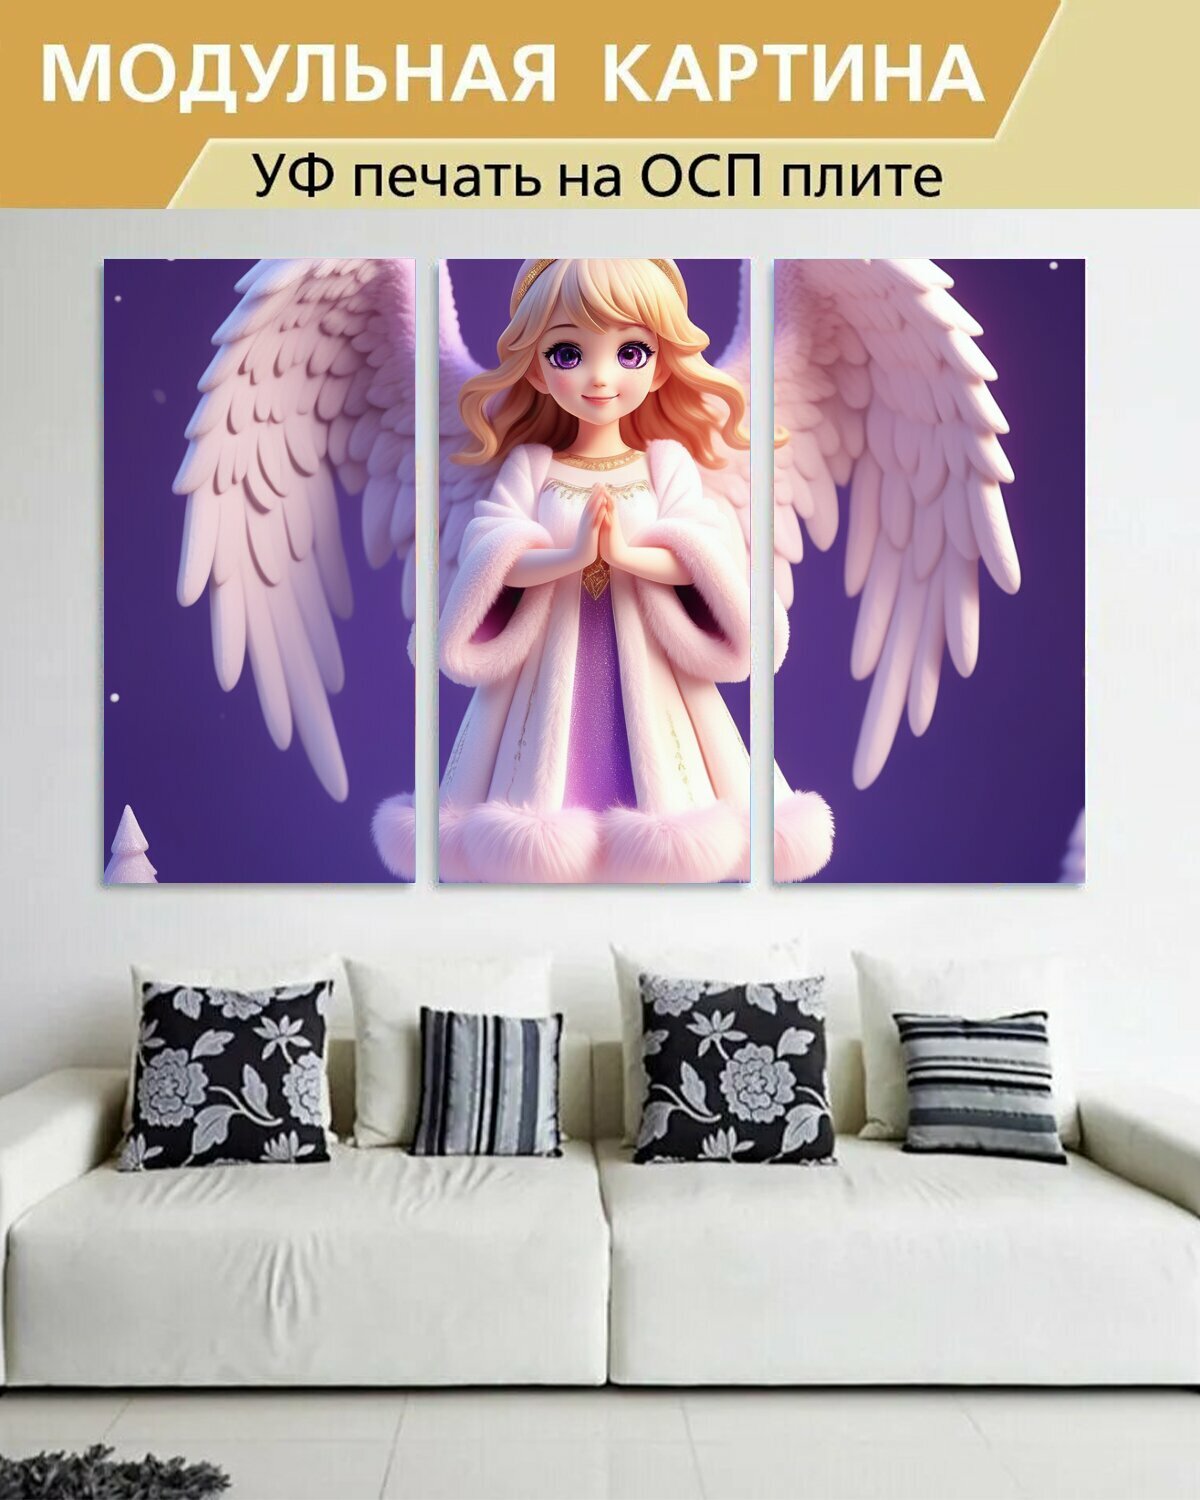 Модульная картина на ОСП детям "Девочка, ангел, ангелочек, фея, крылья" 188x125 см. 3 части для интерьера на стену